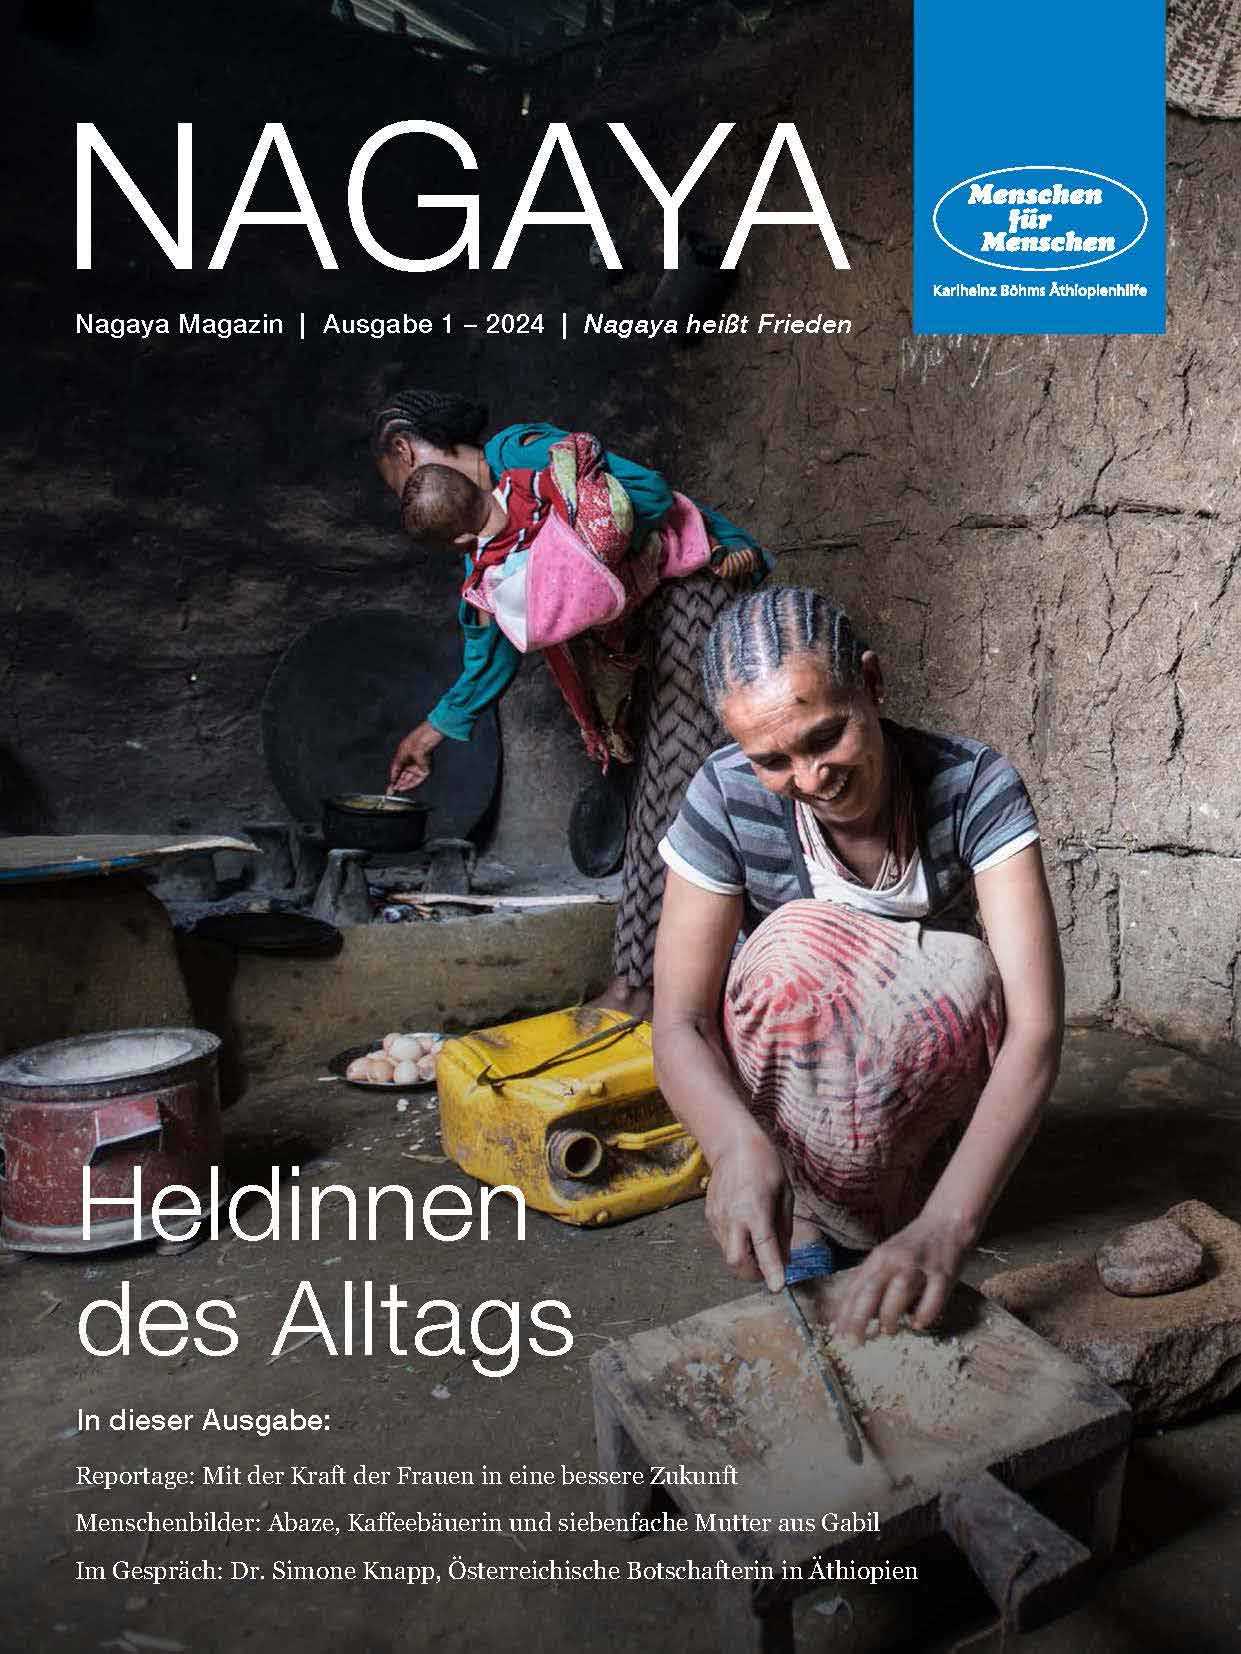 Cover des Nagaya Magazins 1/2024 zeigt zwei äthiopische Frauen. Eine im Vordergrund, die Zwiebeln schneidet und eine im Hintergrund mit einem Baby im Arm, die vor einer traditionellen Feuerstelle steht